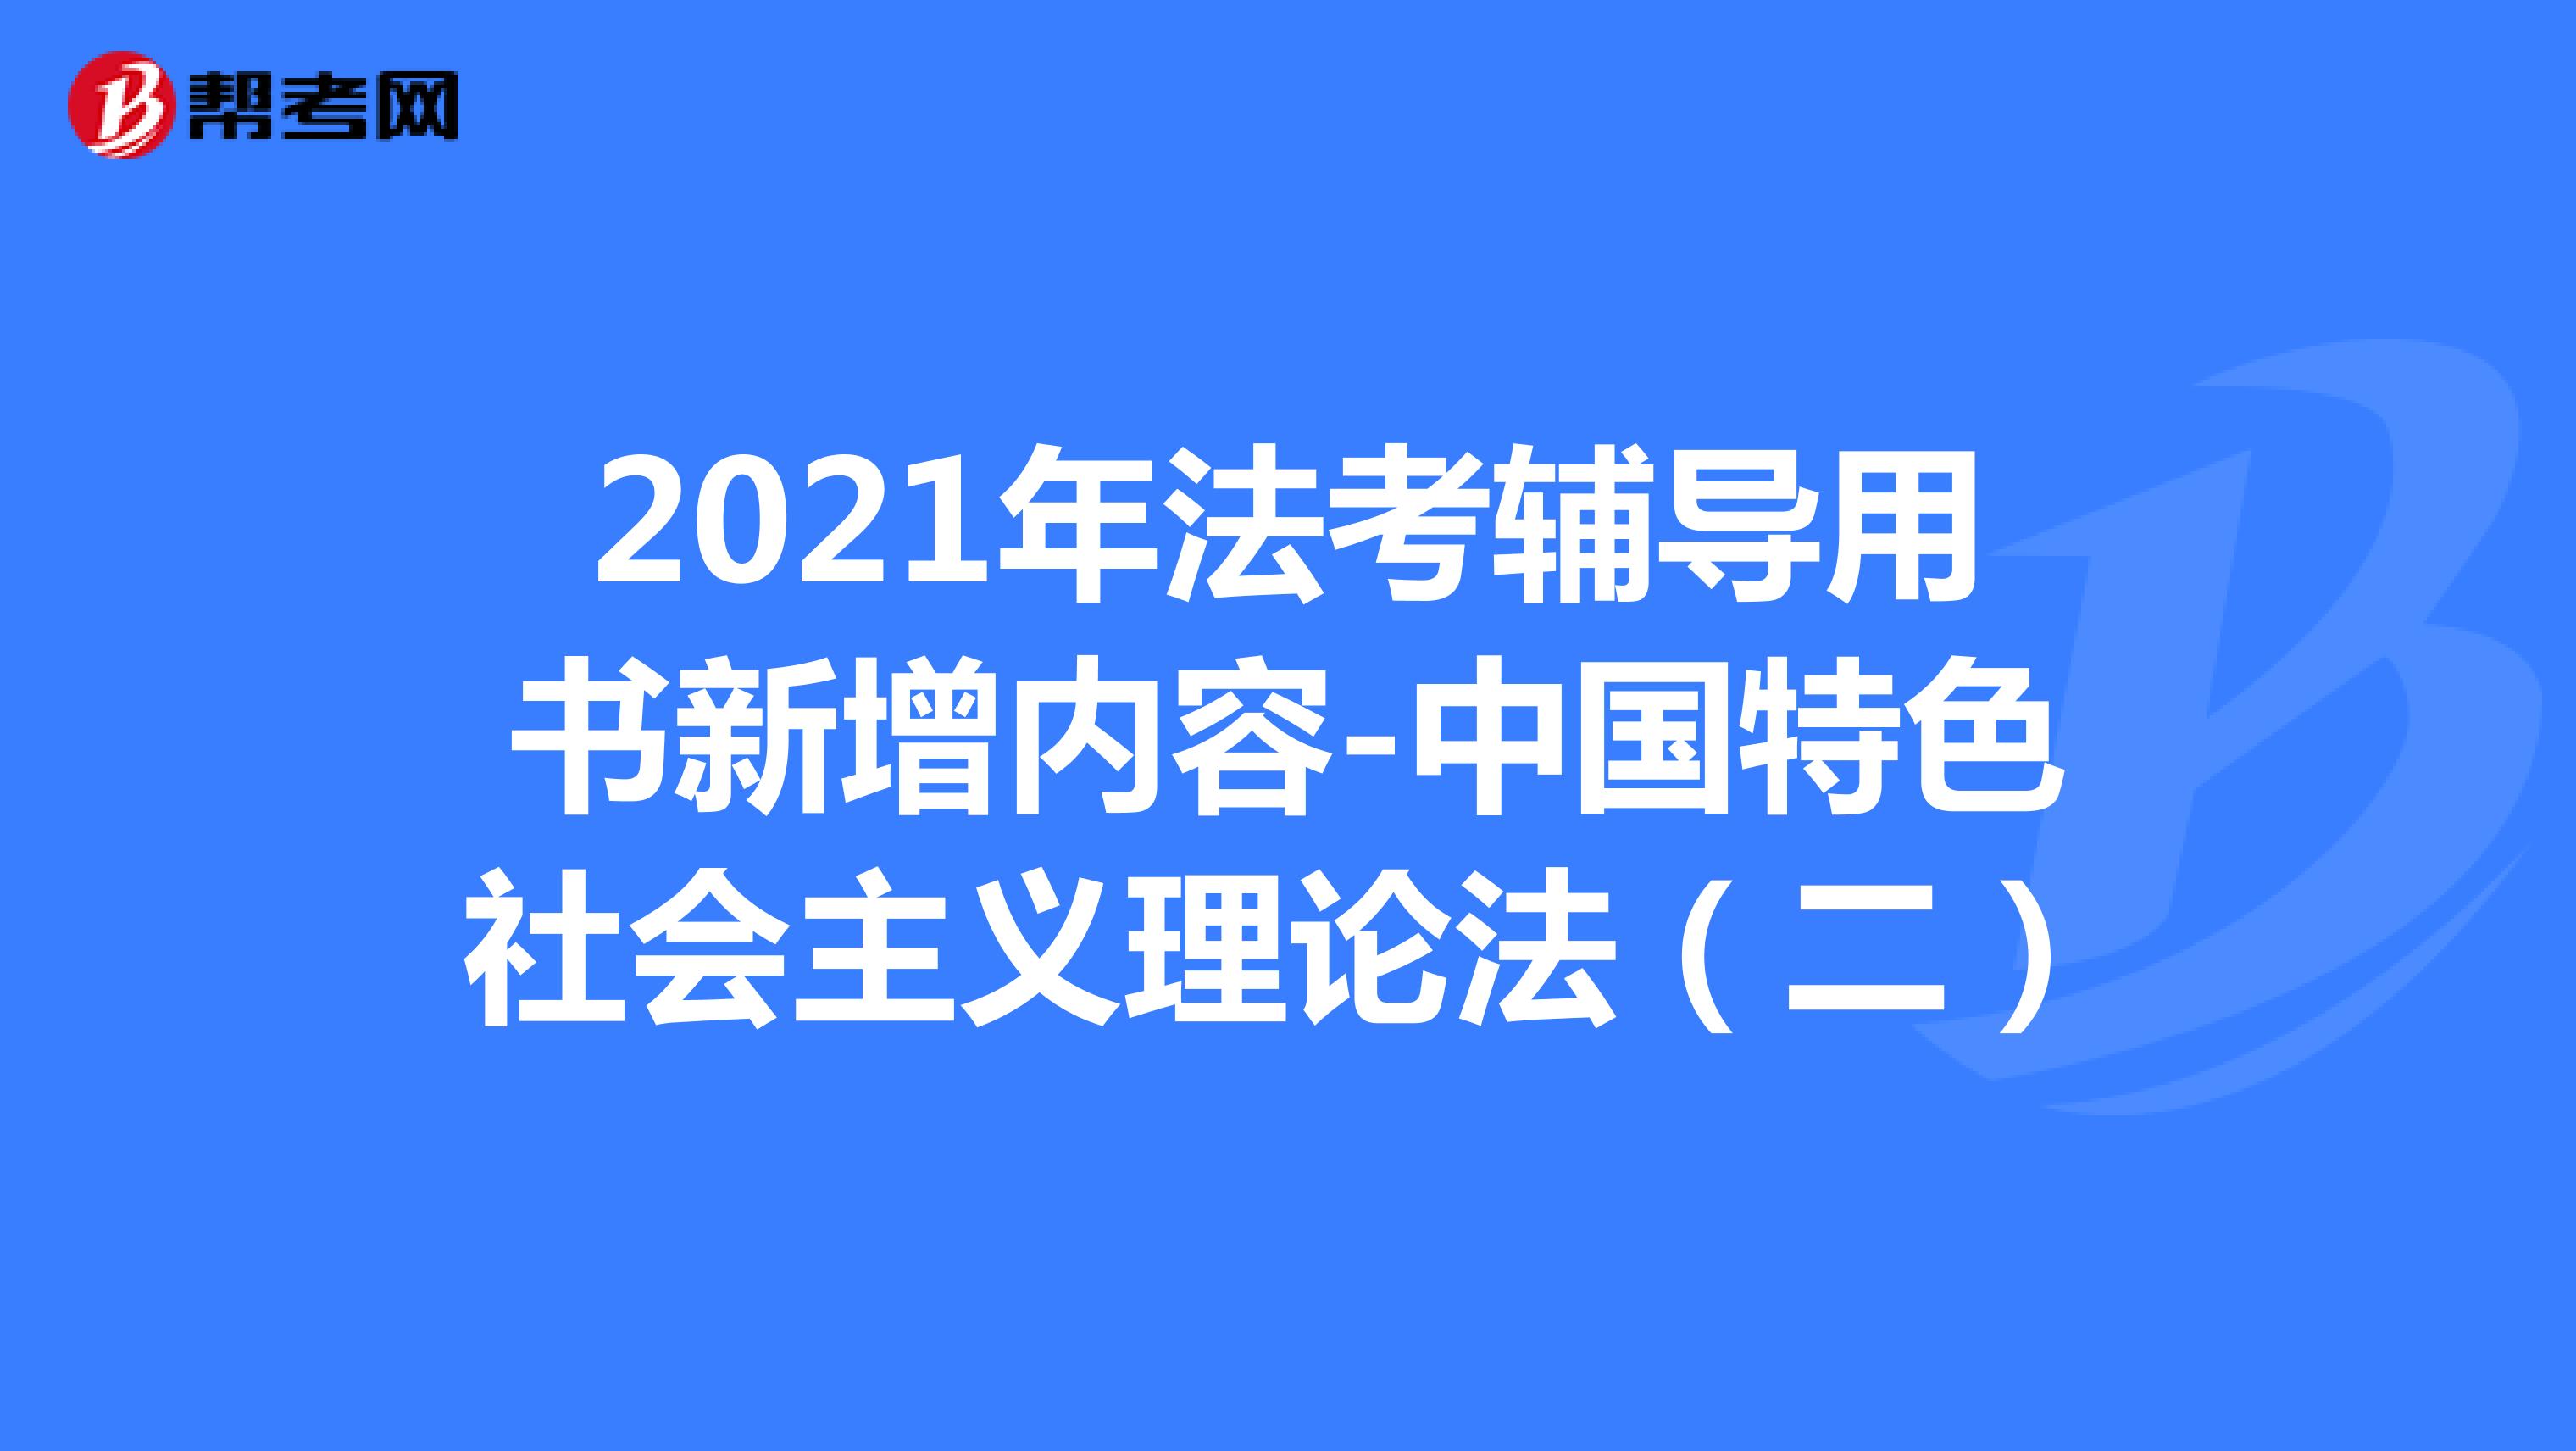 2021年法考辅导用书新增内容-中国特色社会主义理论法（二）